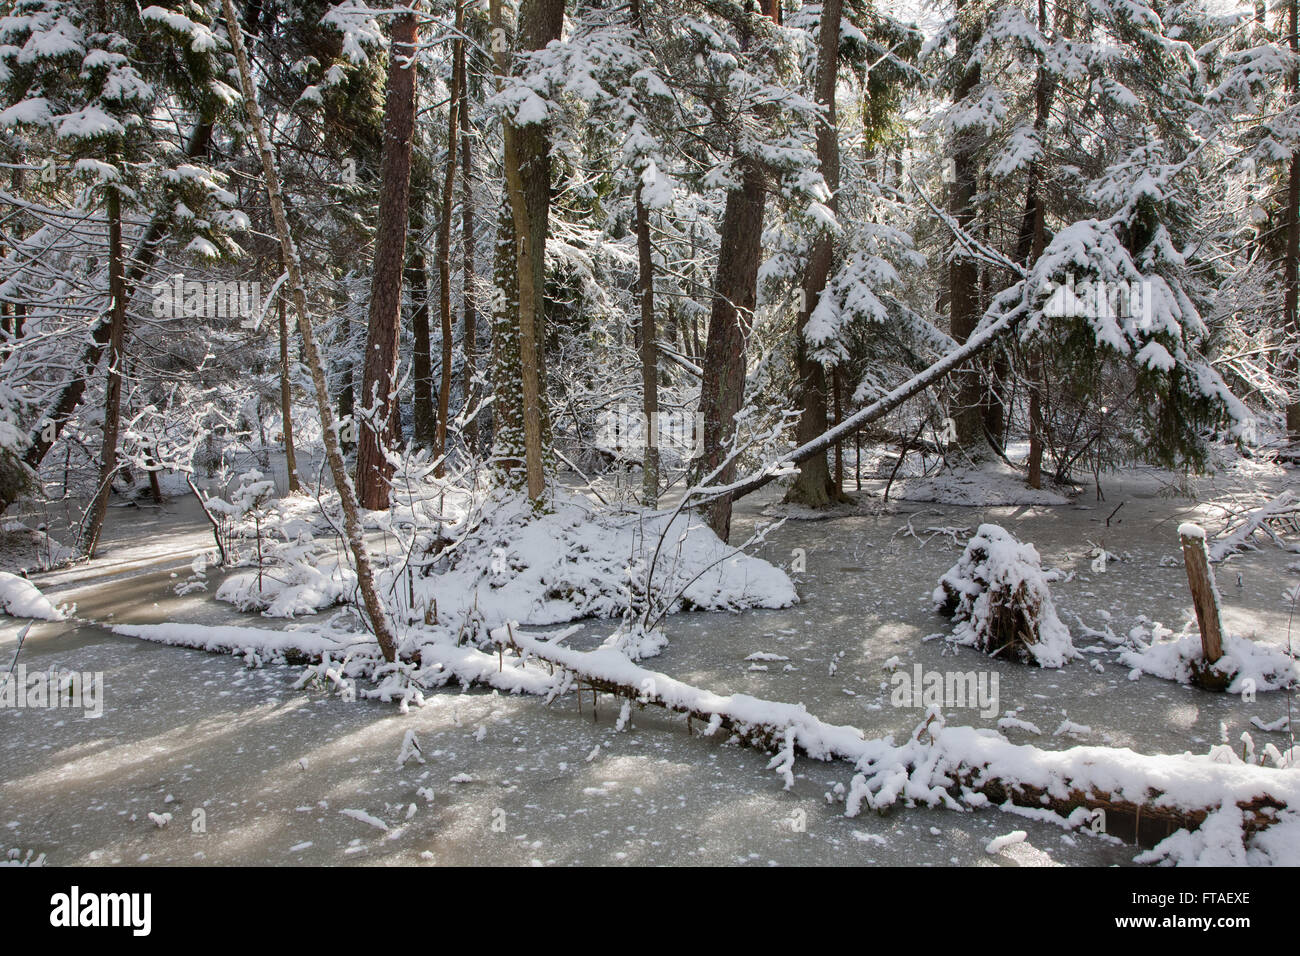 Après les chutes de neige dans des zones humides se matin de neige arbres emballés et congelés autour de l'eau, la forêt de Bialowieza, Pologne,Europe Banque D'Images